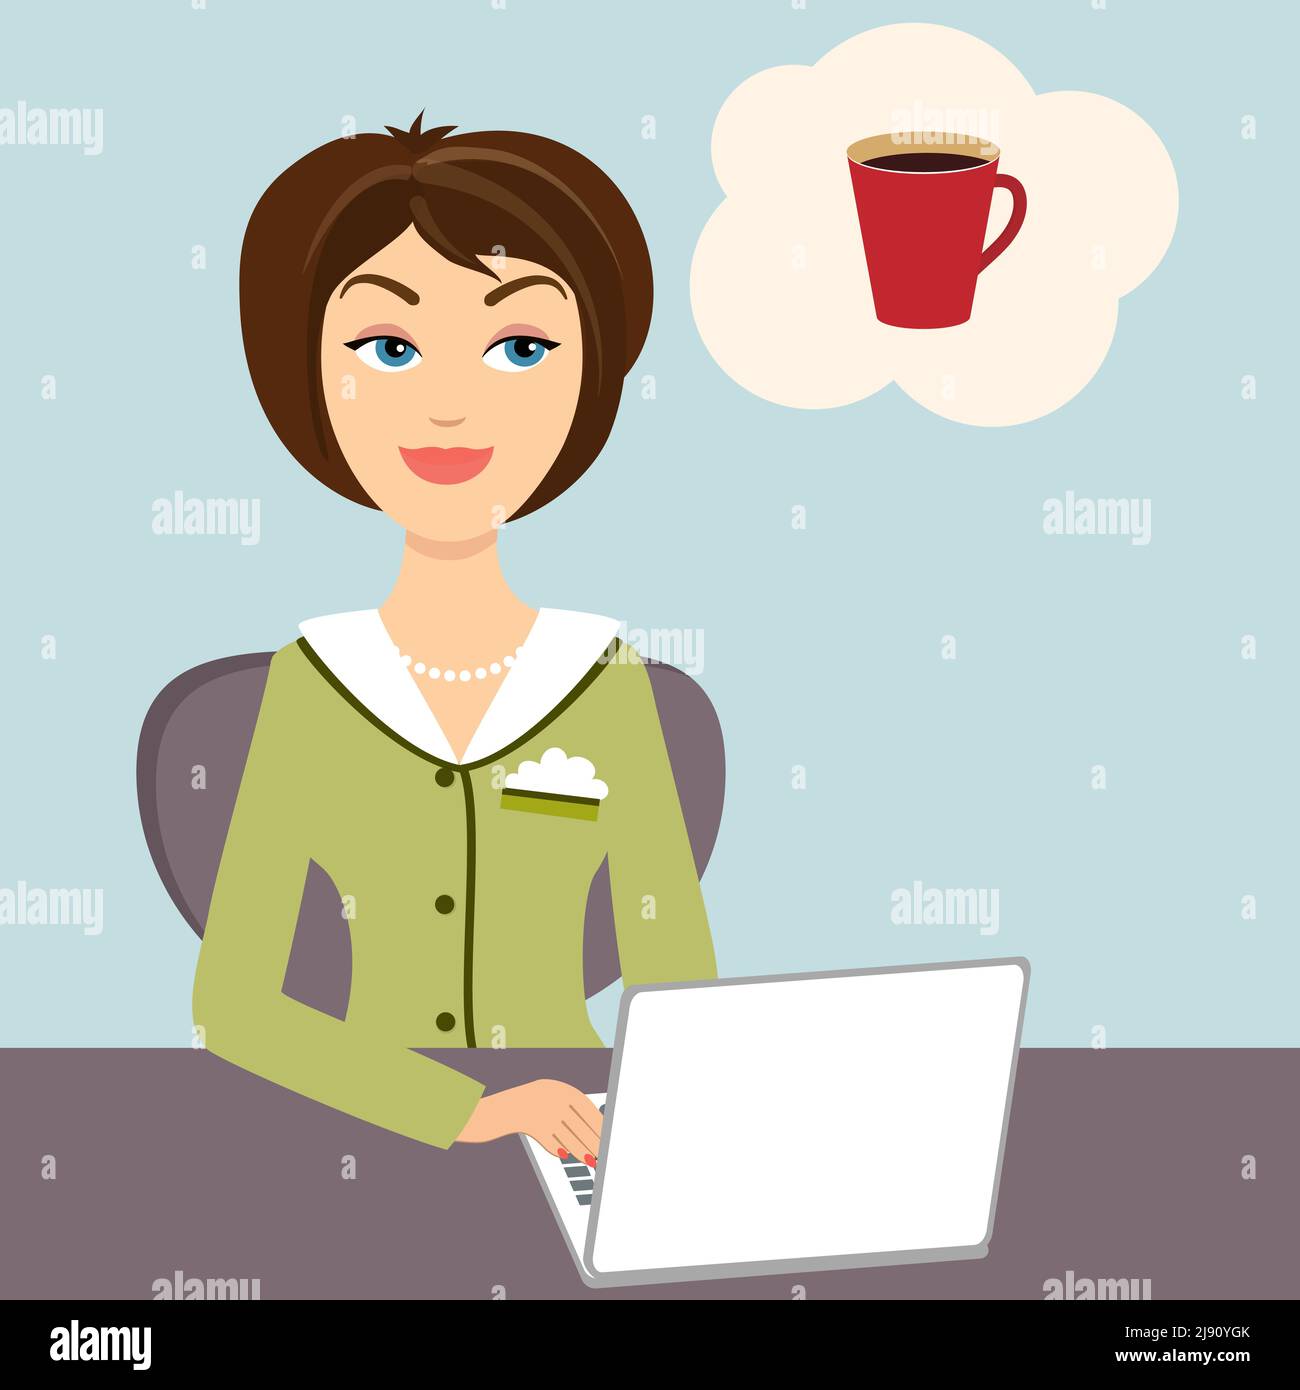 Vektor-Illustration einer attraktiven jungen Sekretärin, die bei ihr sitzt Schreibtisch mit Laptop-Computer, der von einem Becher träumt Erfrischender heißer Kaffee Stock Vektor